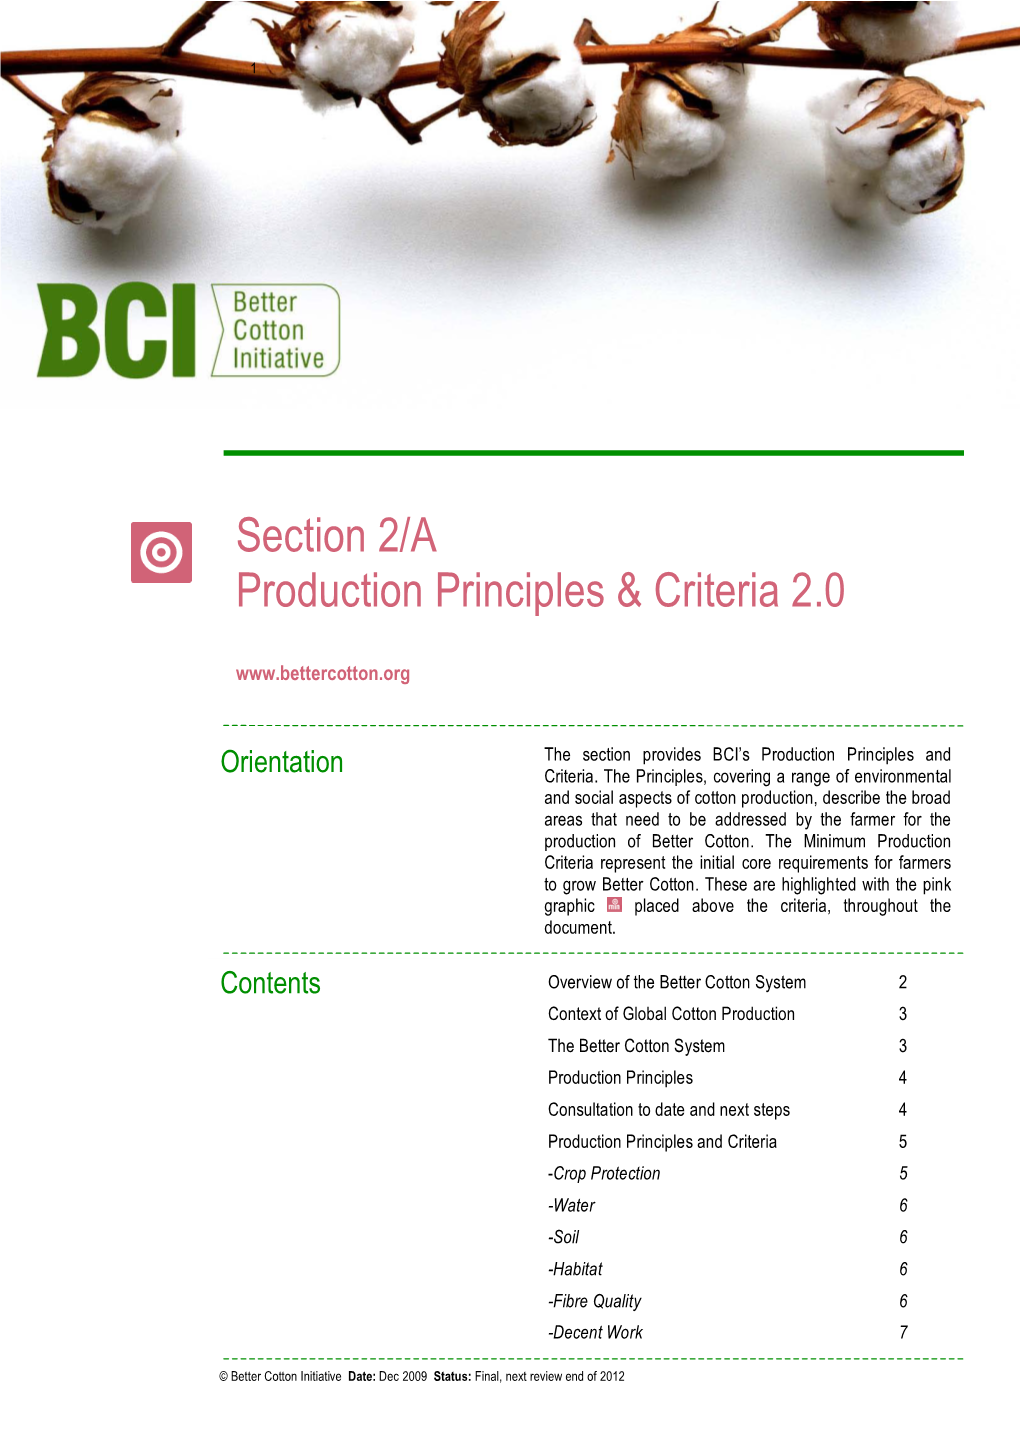 Better Cotton Initiative Date: Dec 2009 Status: Final, Next Review End of 2012 Production Principles & Criteria 2.0 / Section 2A / Page 2 Sur 8